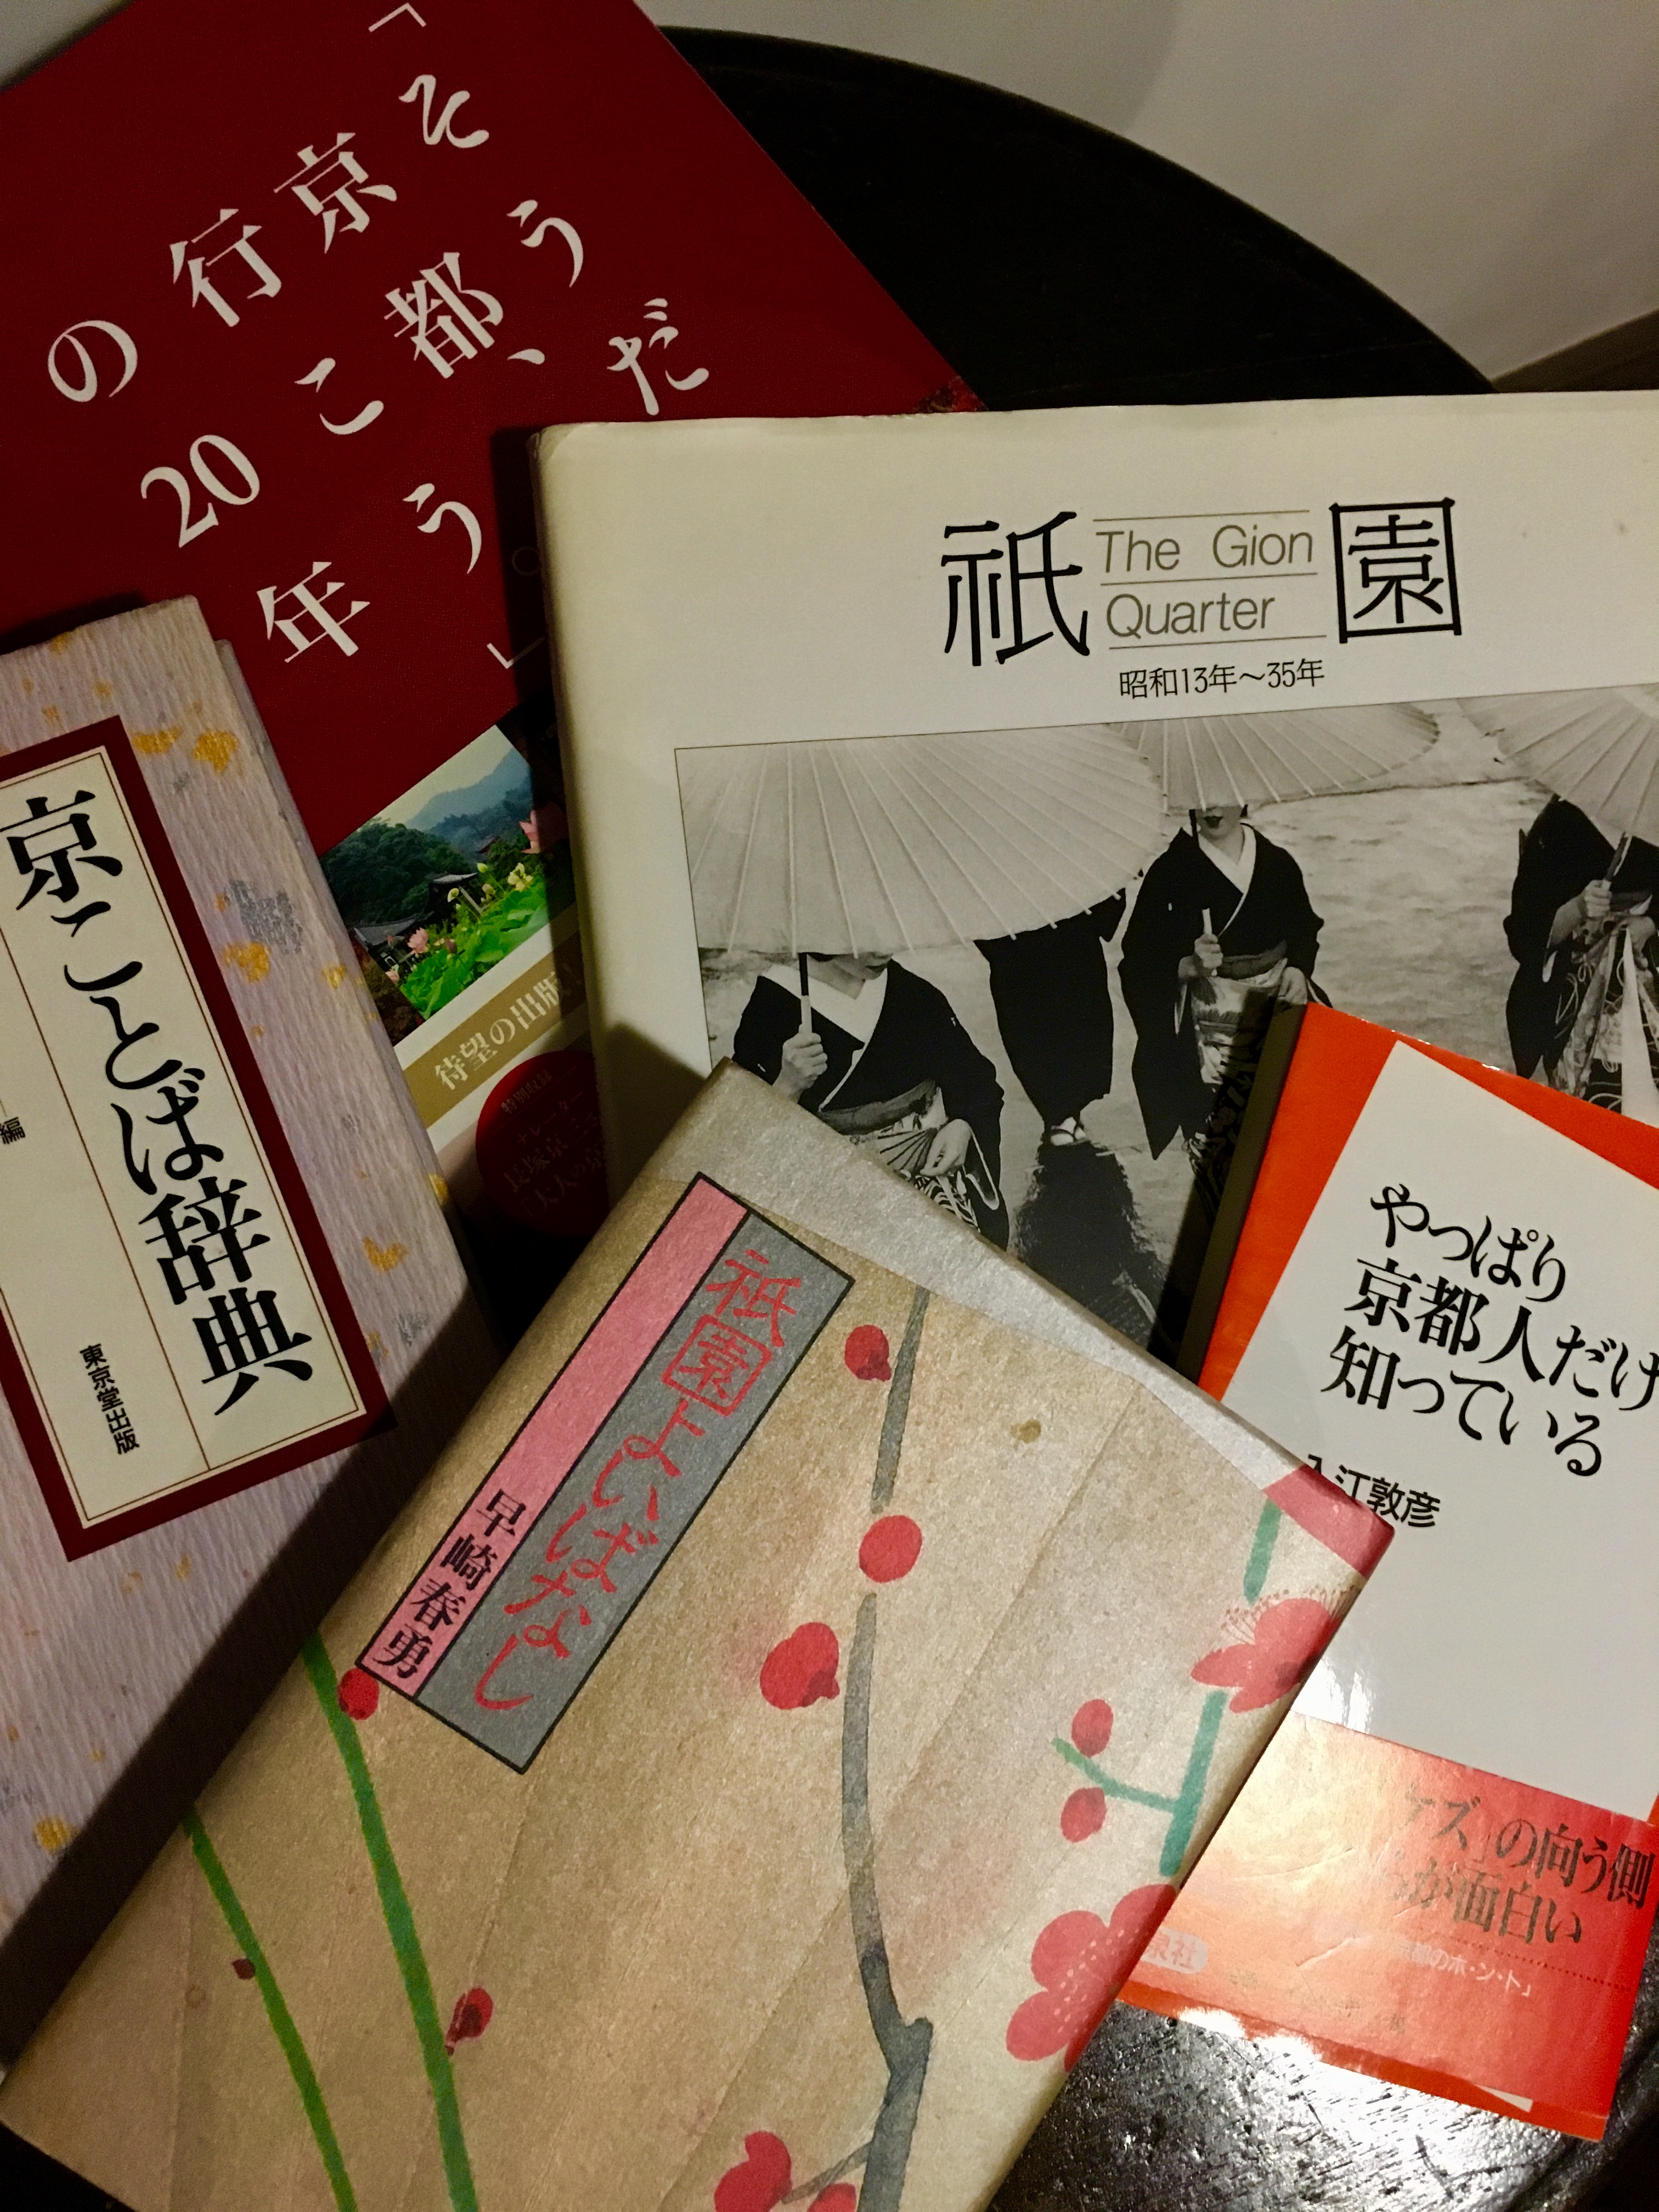 京都にちなんだ面白い書物など。京都人の研究？にもなるかも知れません！？